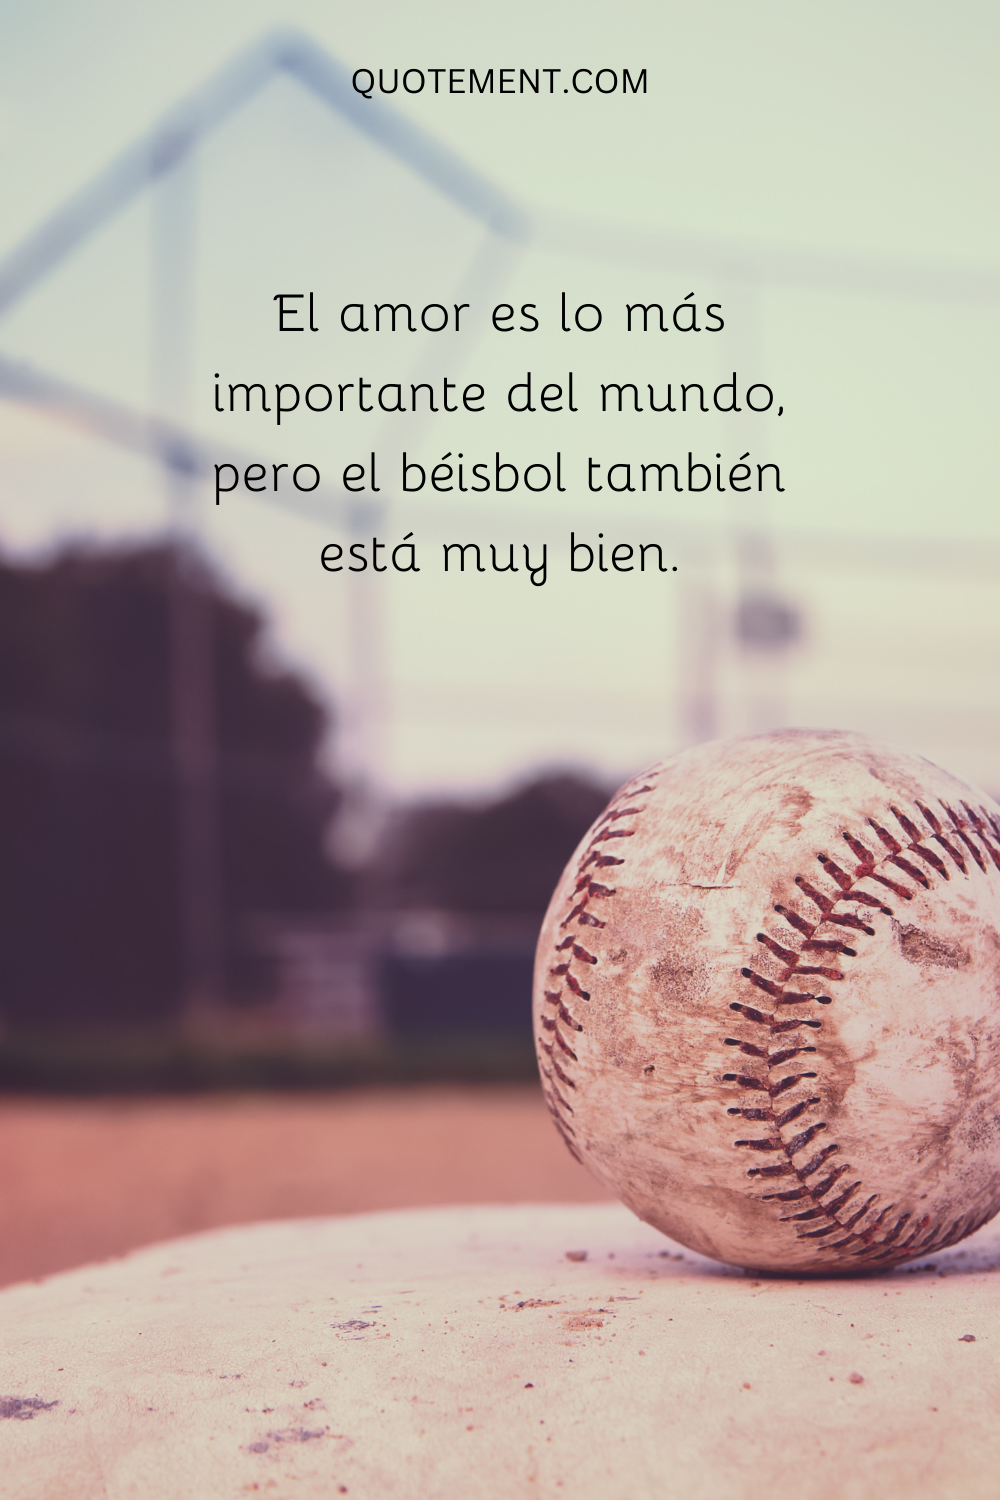 El amor es lo más importante del mundo, pero el béisbol también está muy bien